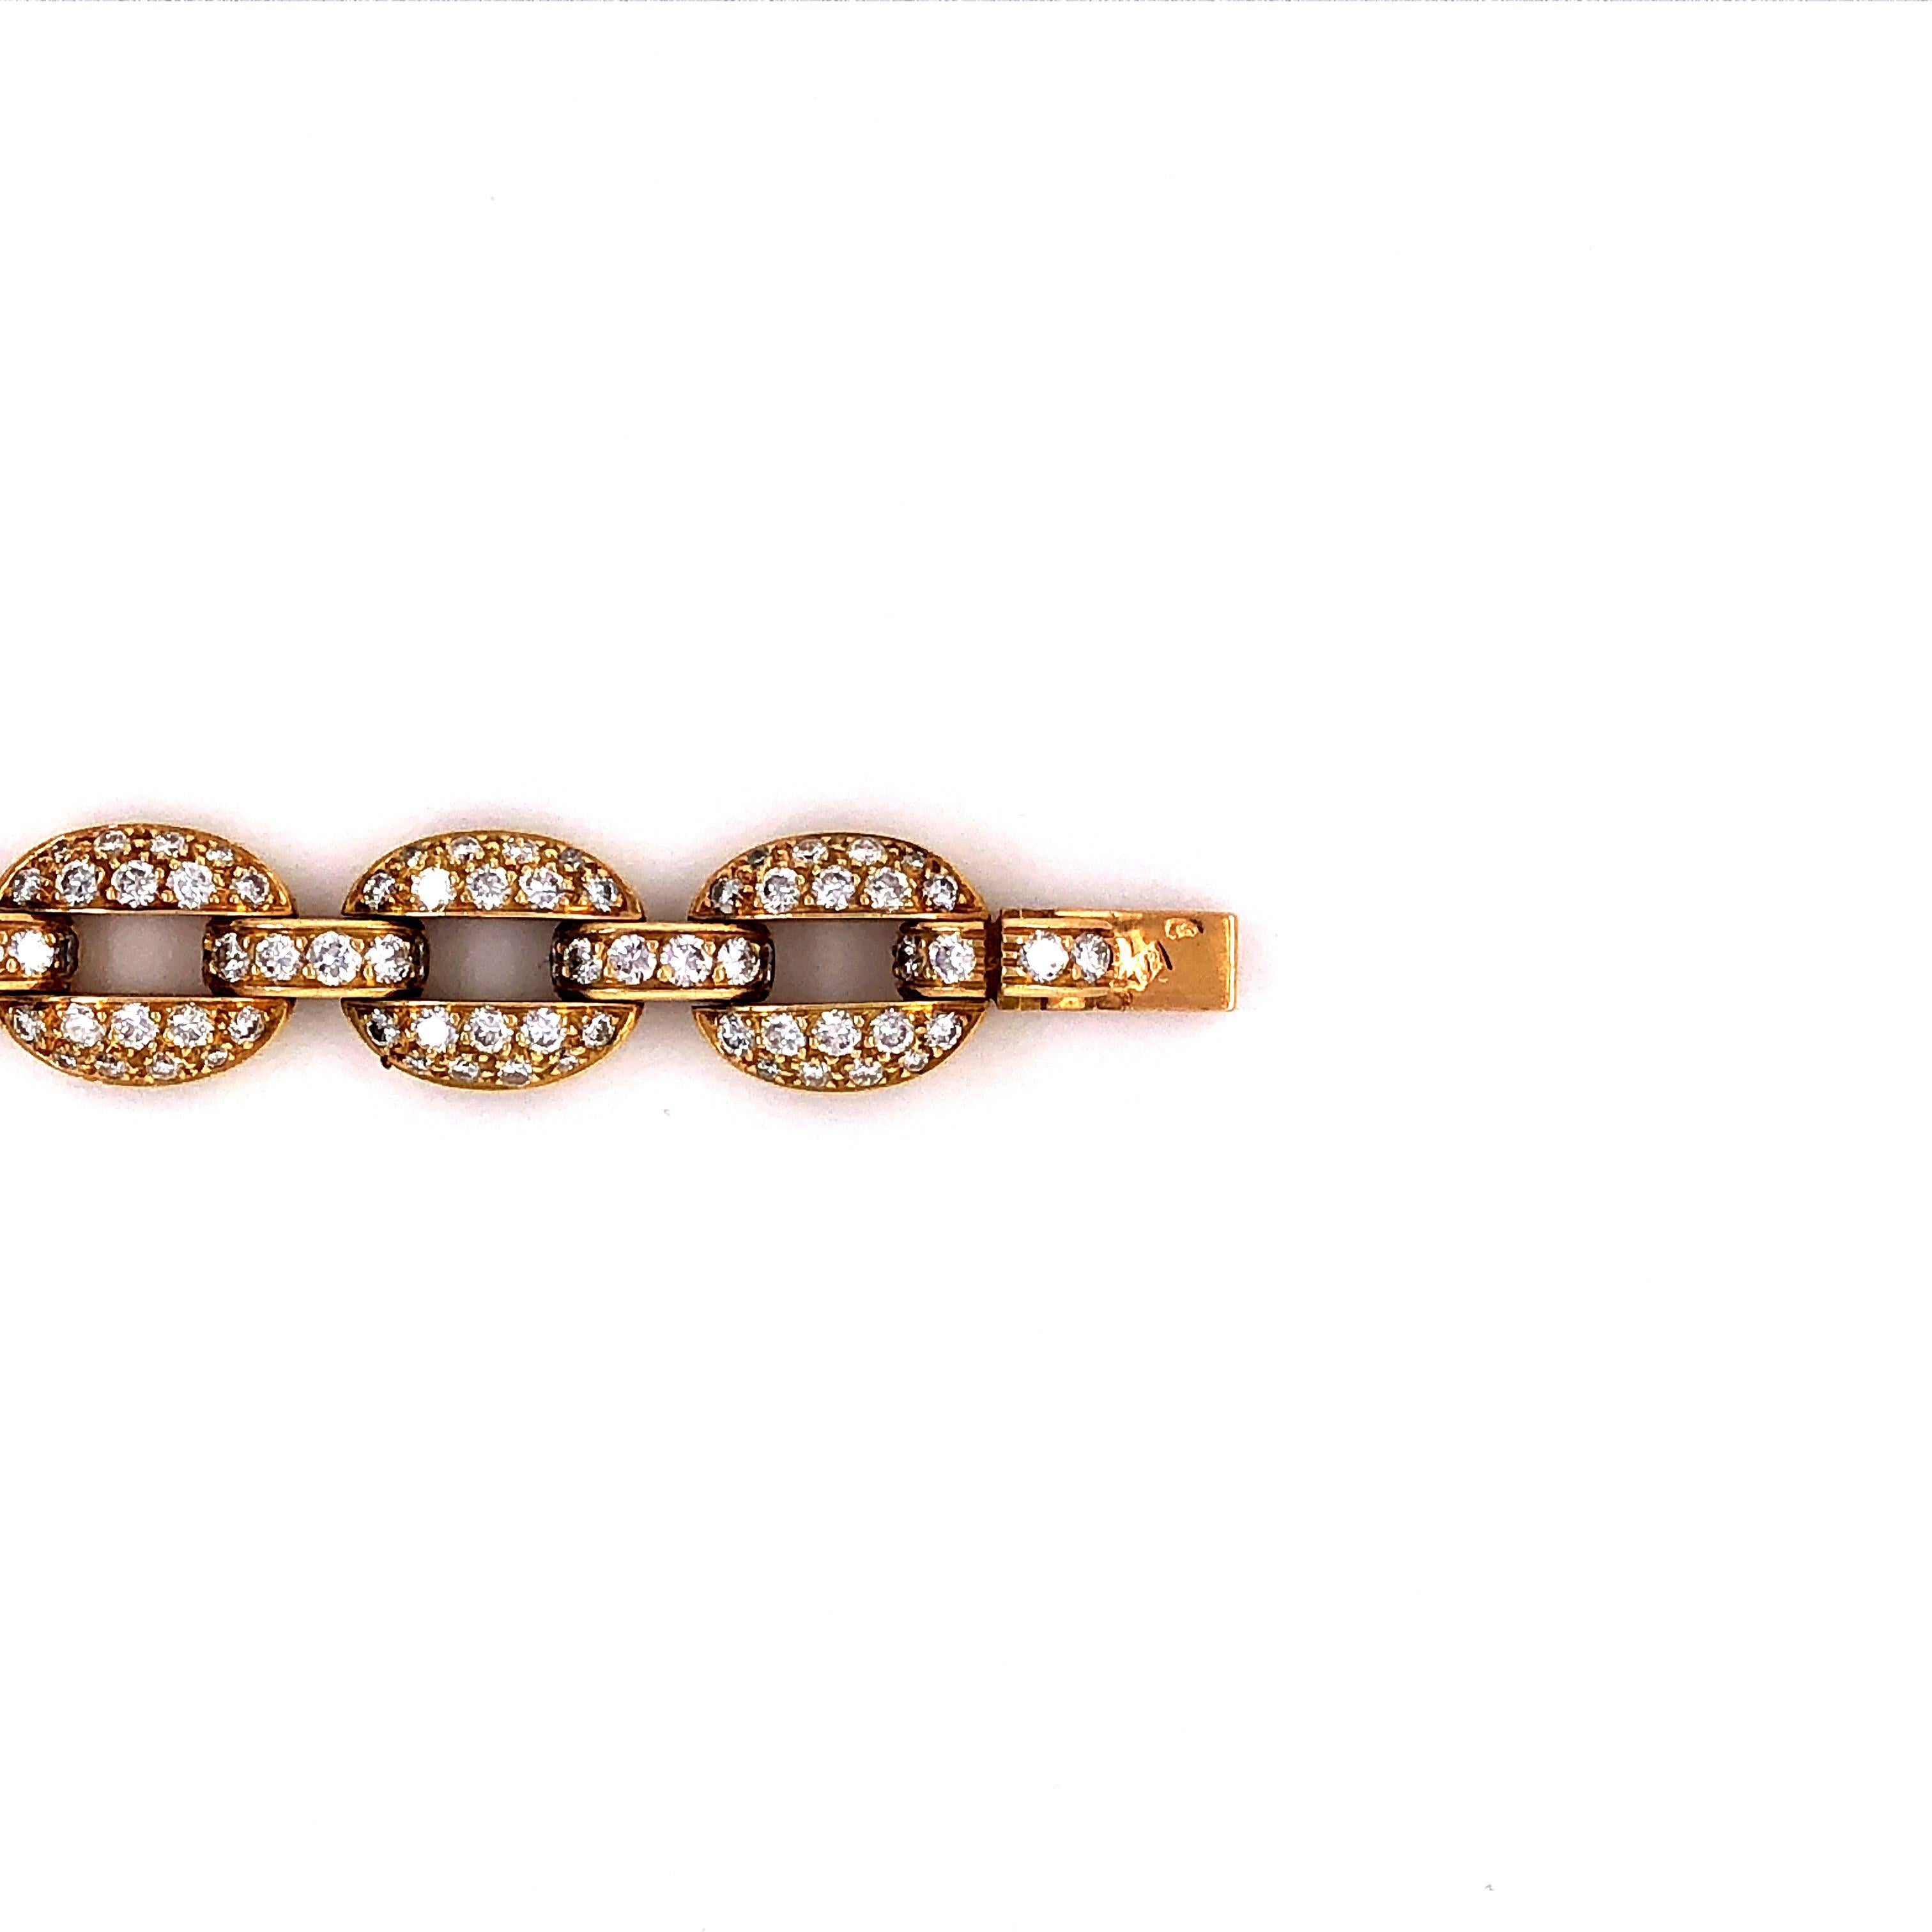 Round Cut Timeless Cartier Diamond 18 Karat Yellow Gold Bracelet